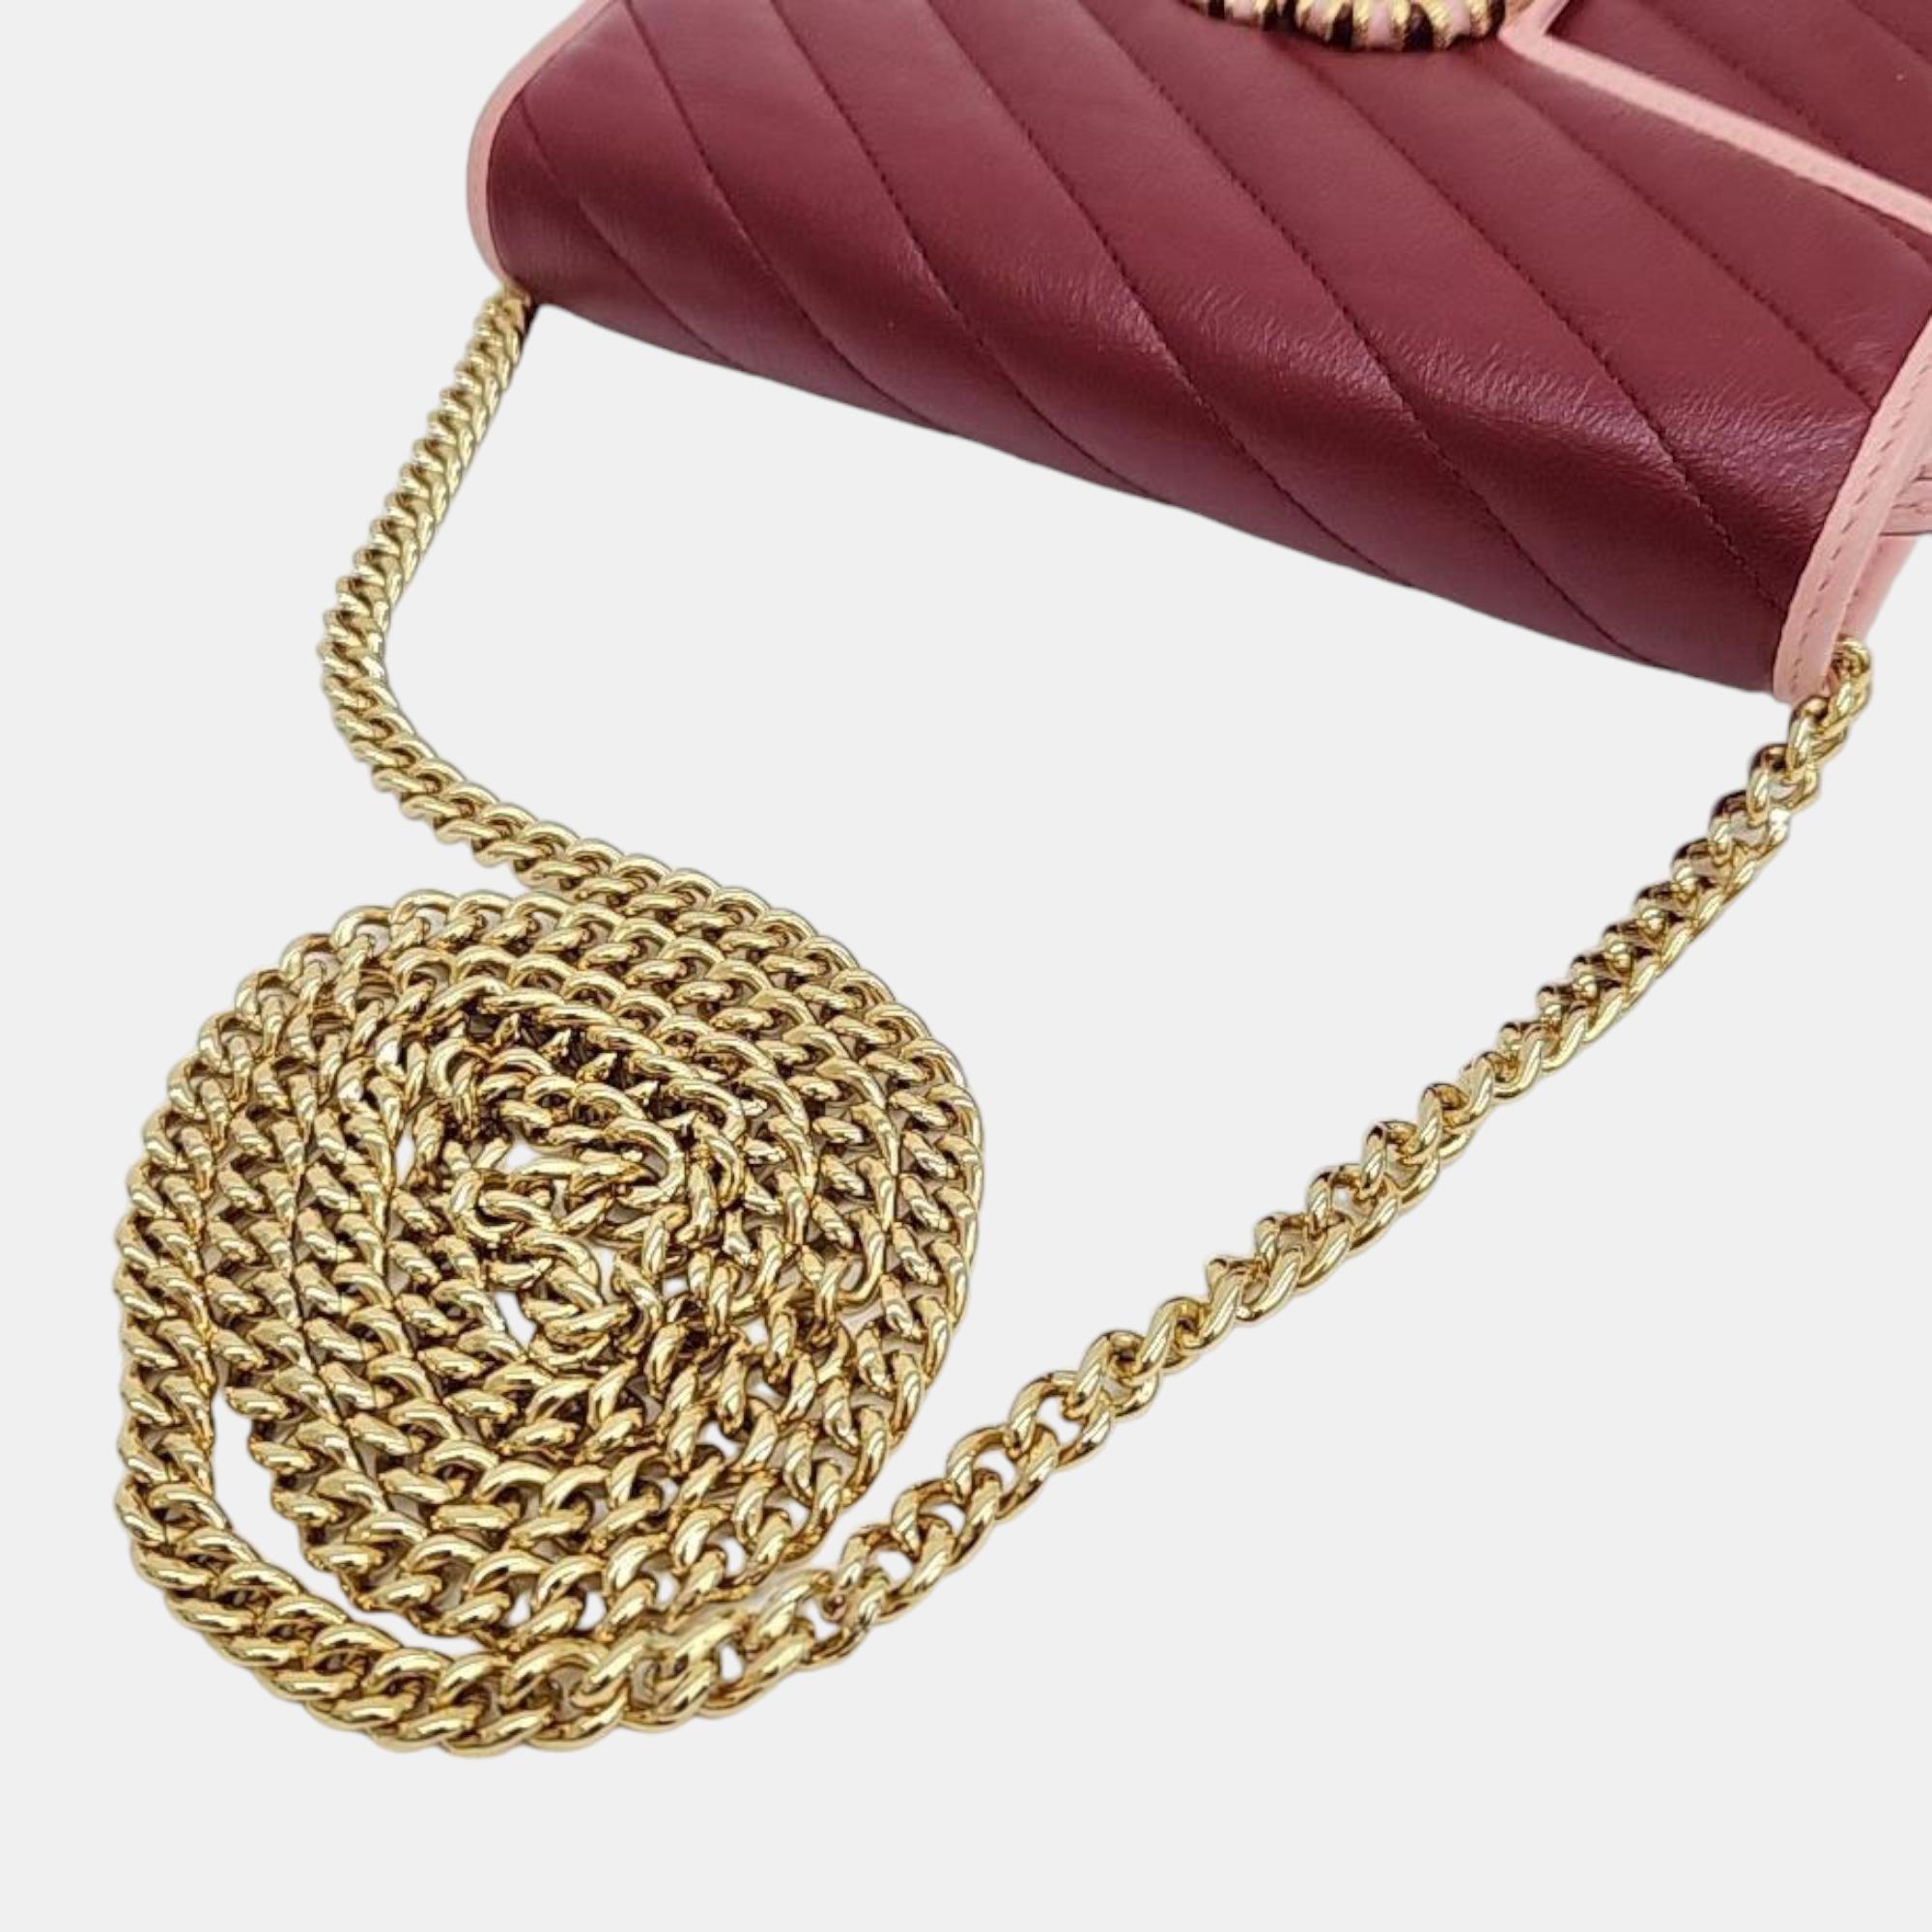 Gucci Marmont Mini Chain Bag (573807)